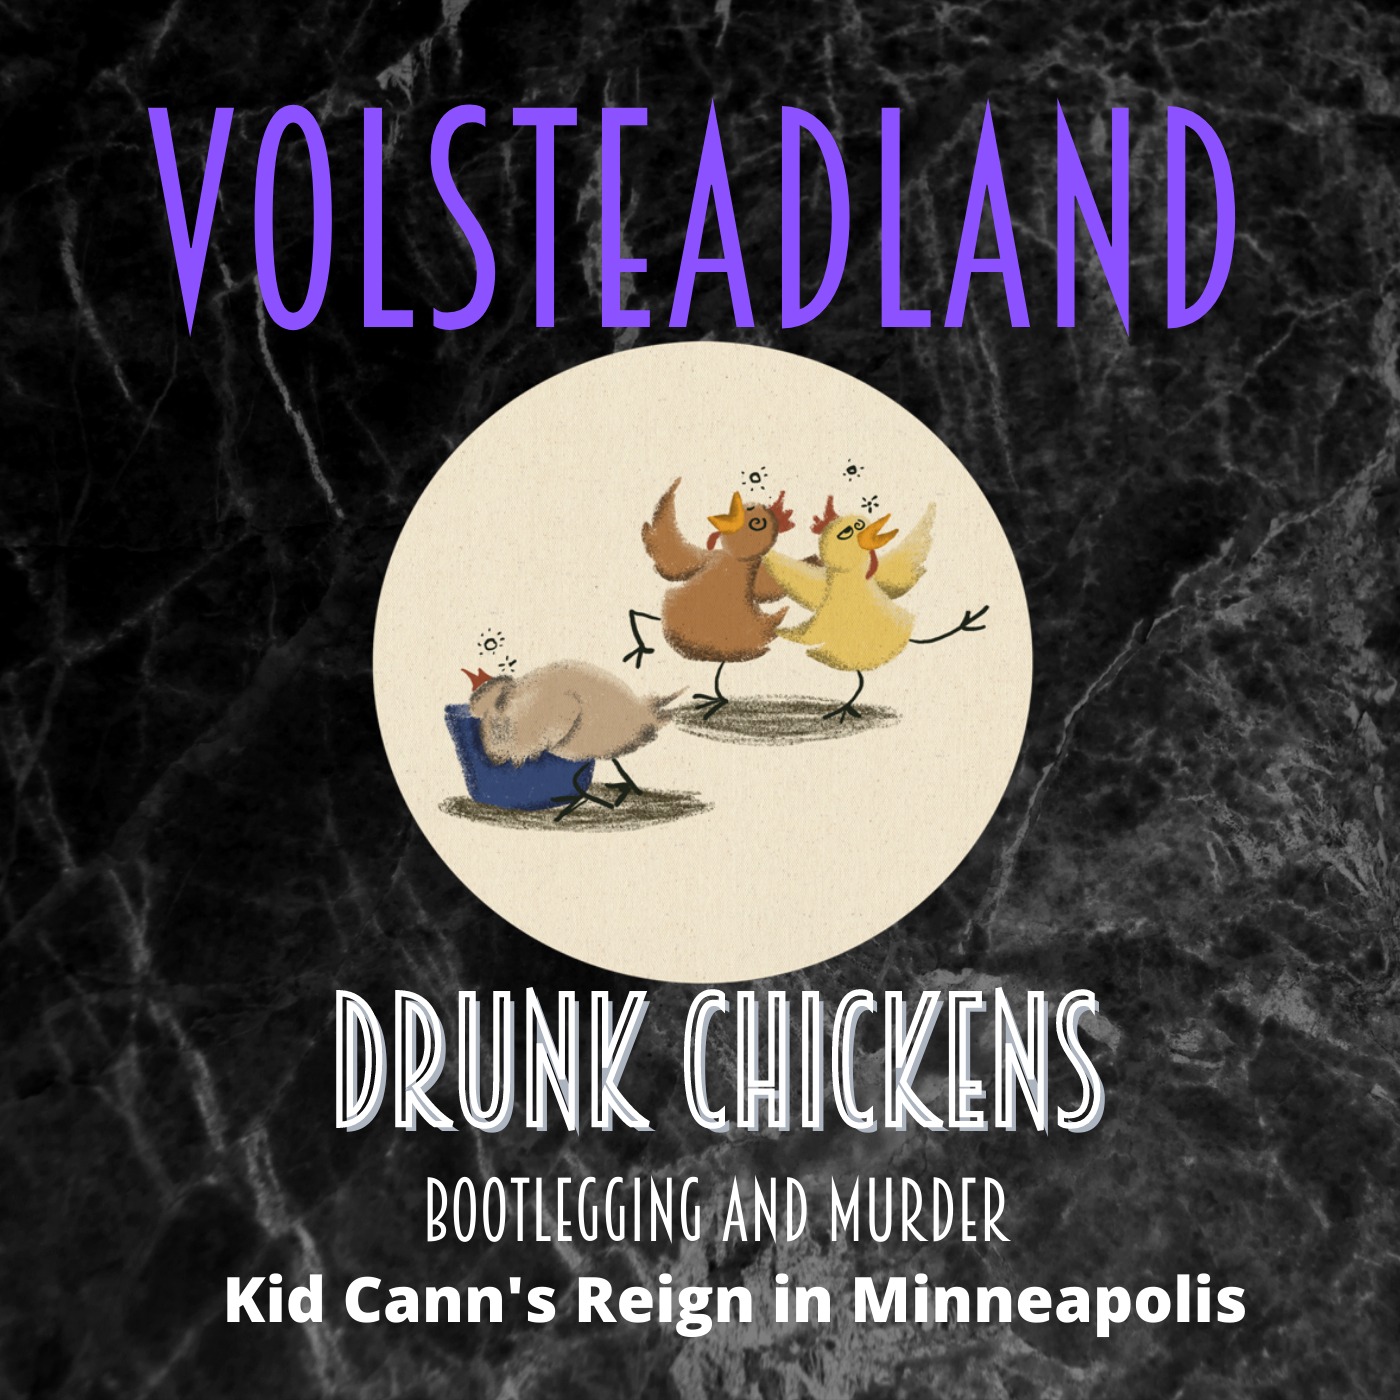 Volsteadland: Drunk Chickens Image